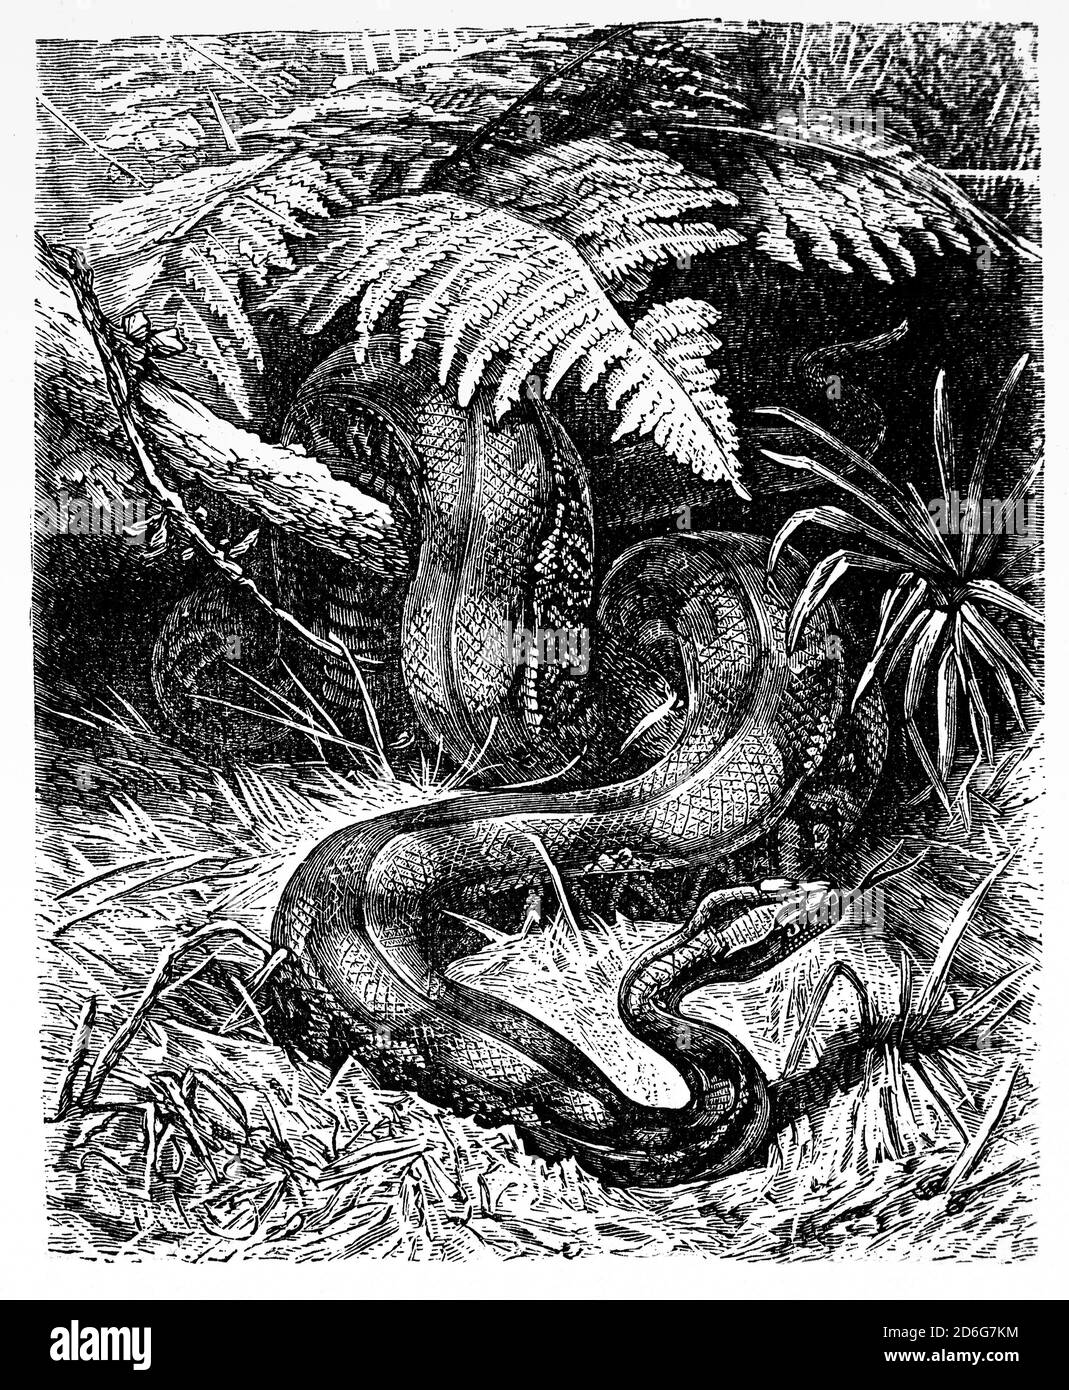 Le boa constricteur (Boa constricteur), ou le boa commun, est une espèce de gros serpent non venimeux à corps lourd. Ils vivent seuls, sont nocturnes, mais ils peuvent se prélasser pendant la journée où les températures nocturnes sont trop basses. Les prédateurs embuscades, souvent en attente d'une proie appropriée à venir, mais ils ont également été connus pour chasser activement, dans les régions avec une faible concentration de proies appropriées. Le boa frappe d'abord la proie, la saisit avec ses dents, puis procède à la constrictement jusqu'à la mort avant de la consommer toute. Banque D'Images